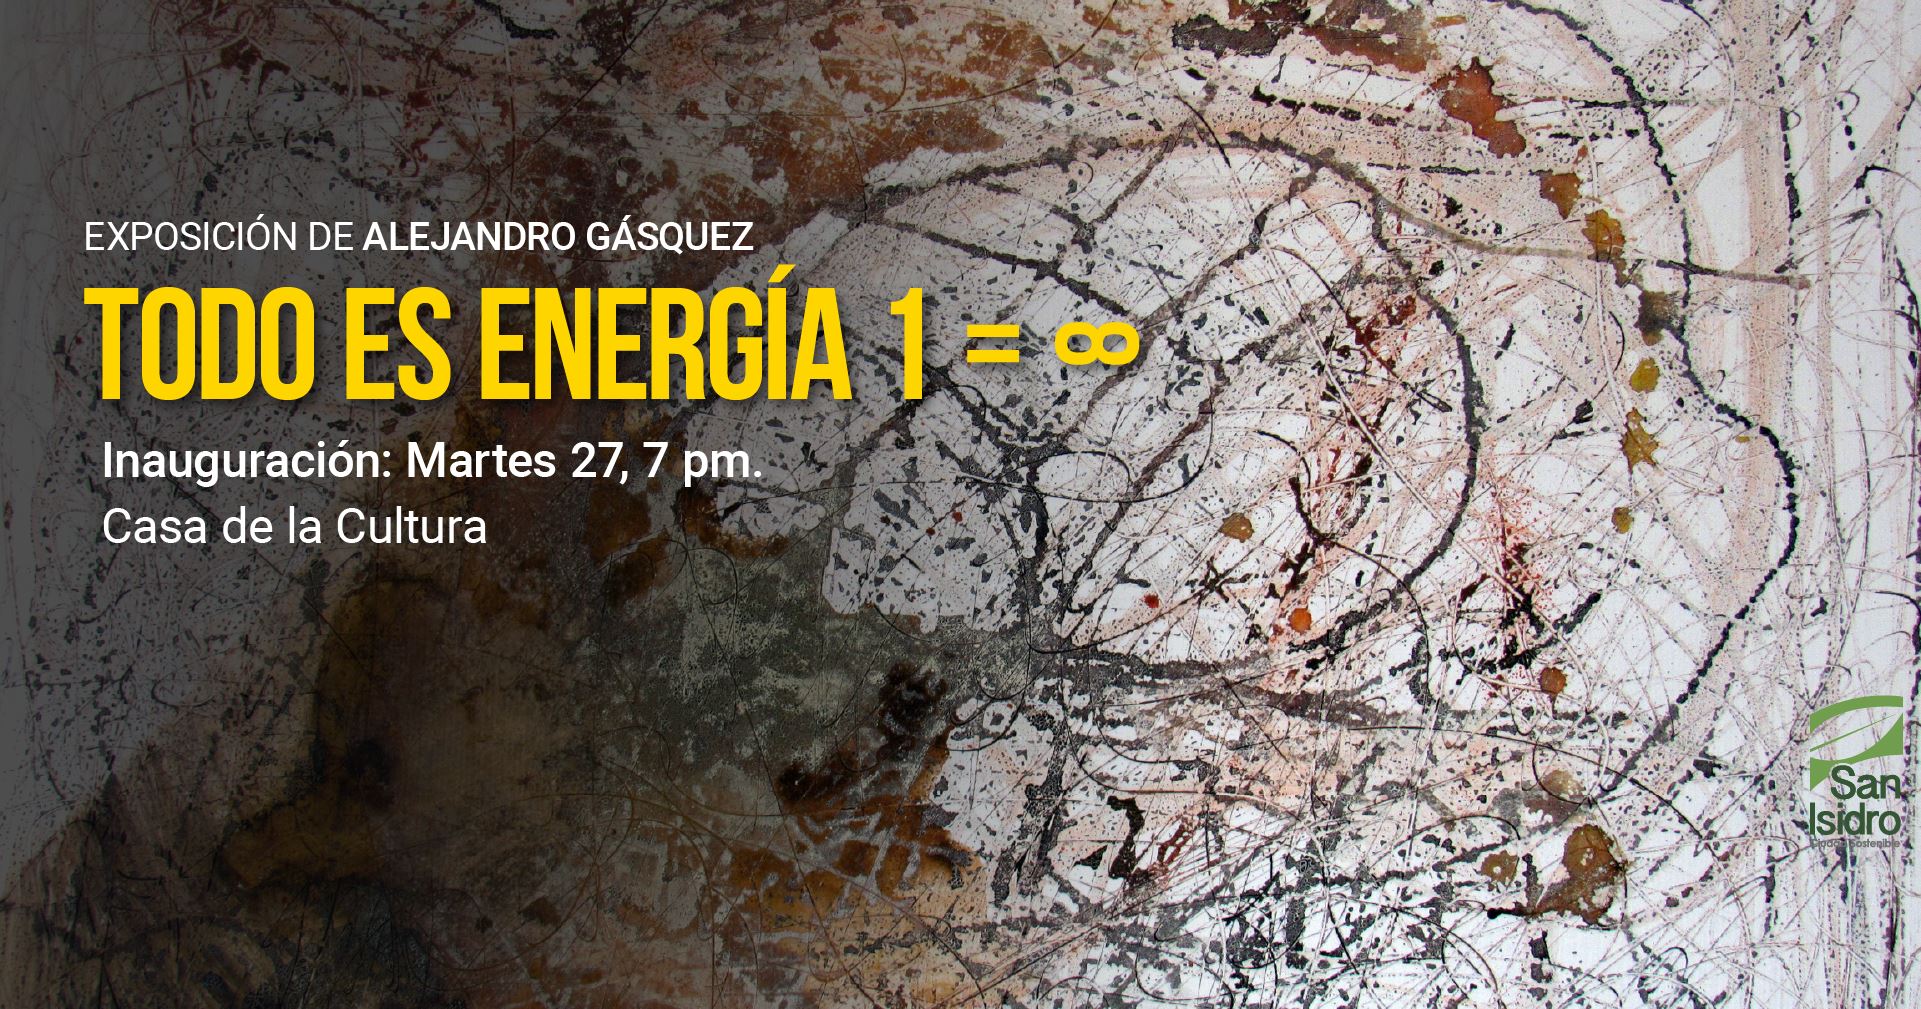 Exposición: "Todo es energía" de Alejandro Gasquez